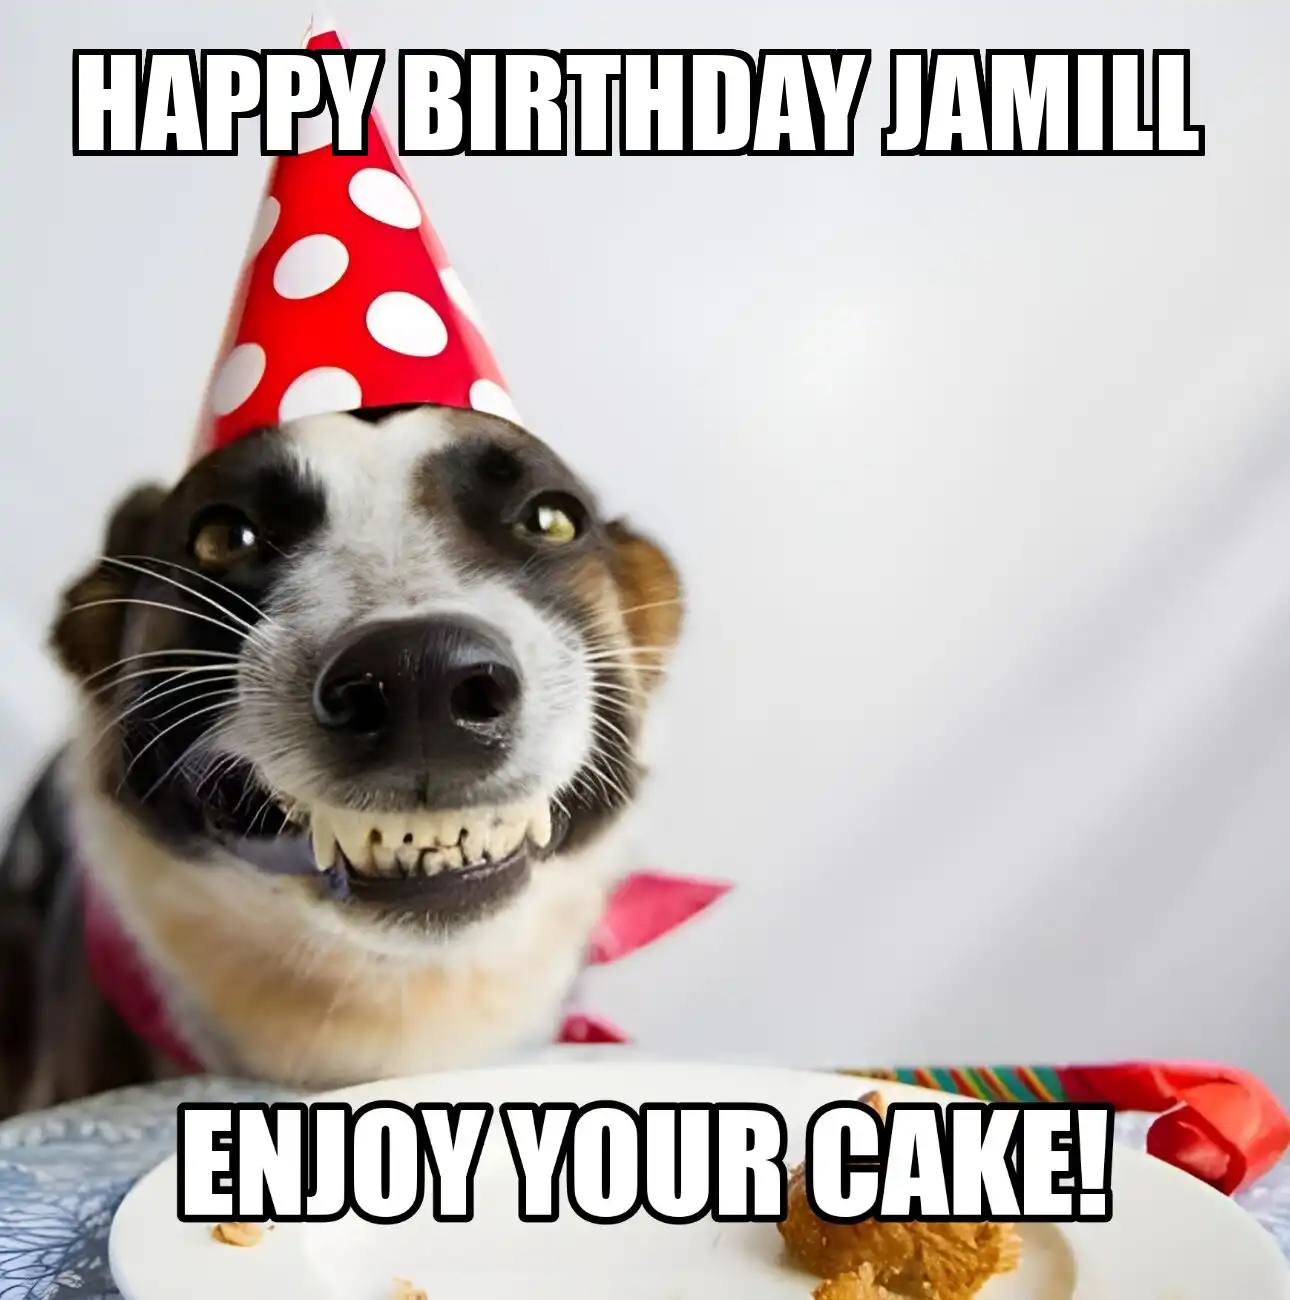 Happy Birthday Jamill Enjoy Your Cake Dog Meme